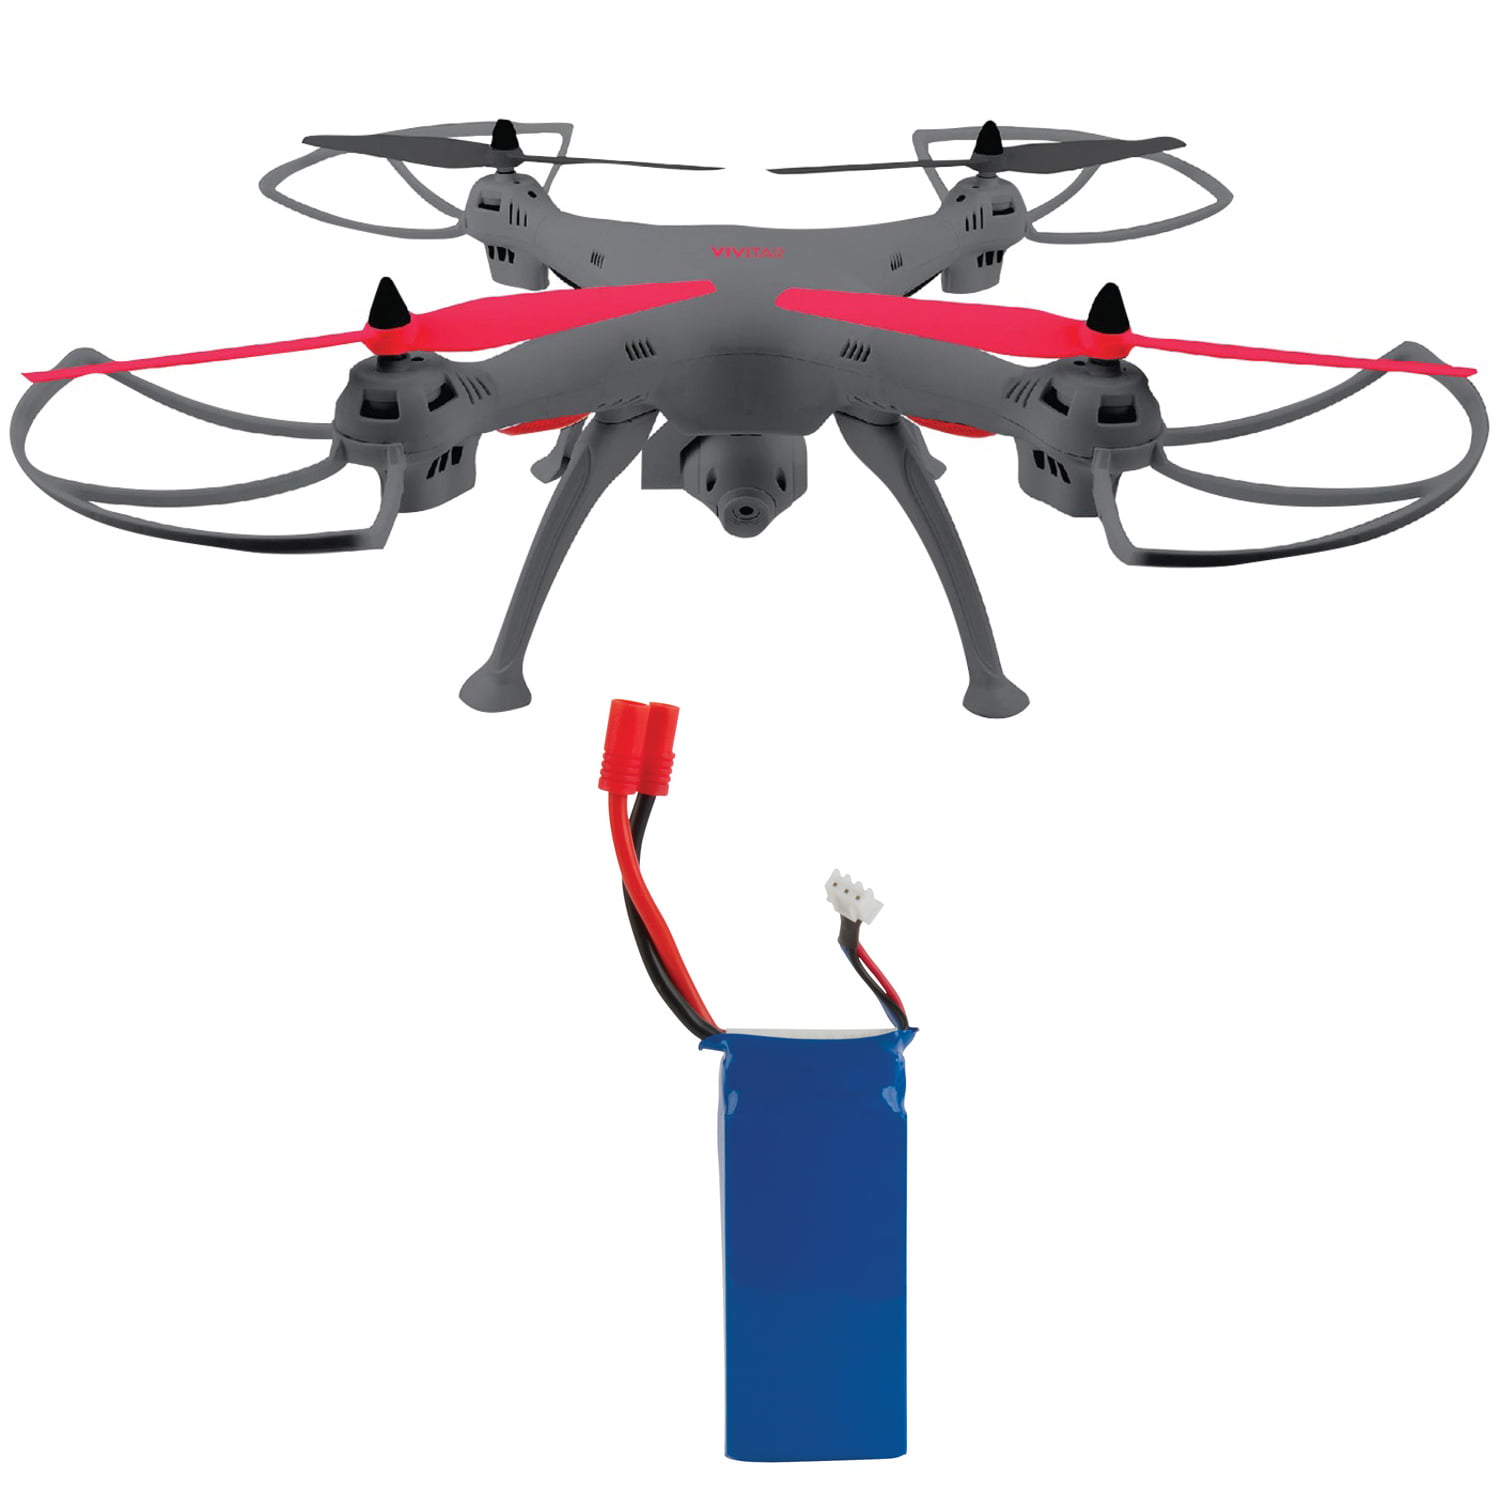 vivitar aeroview drone